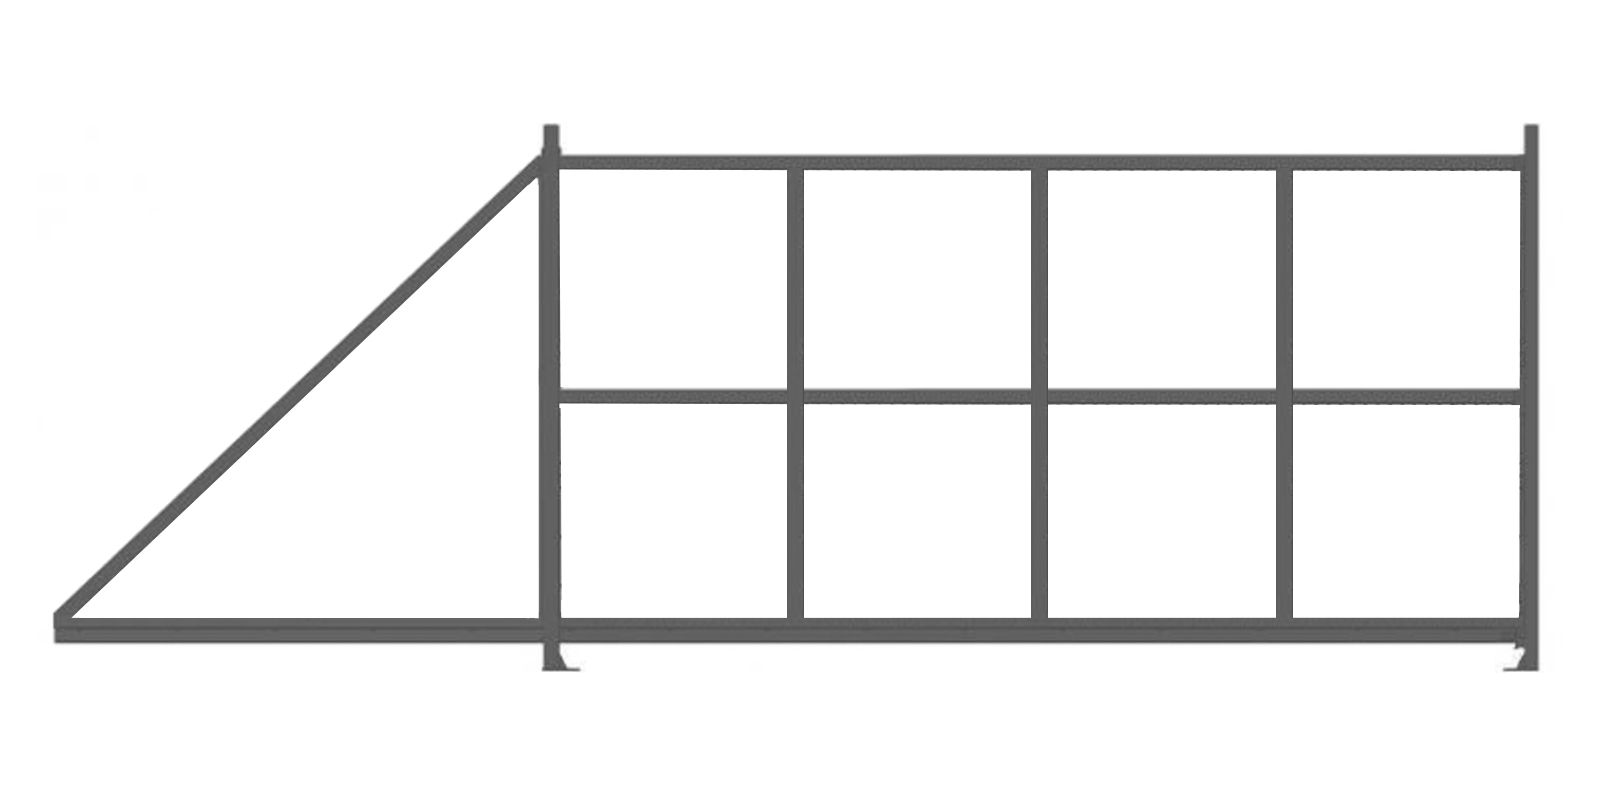 Откатные ворота стандартные 4 м, в комплекте с фурнитурой, изображение, фото | Сталь ТД